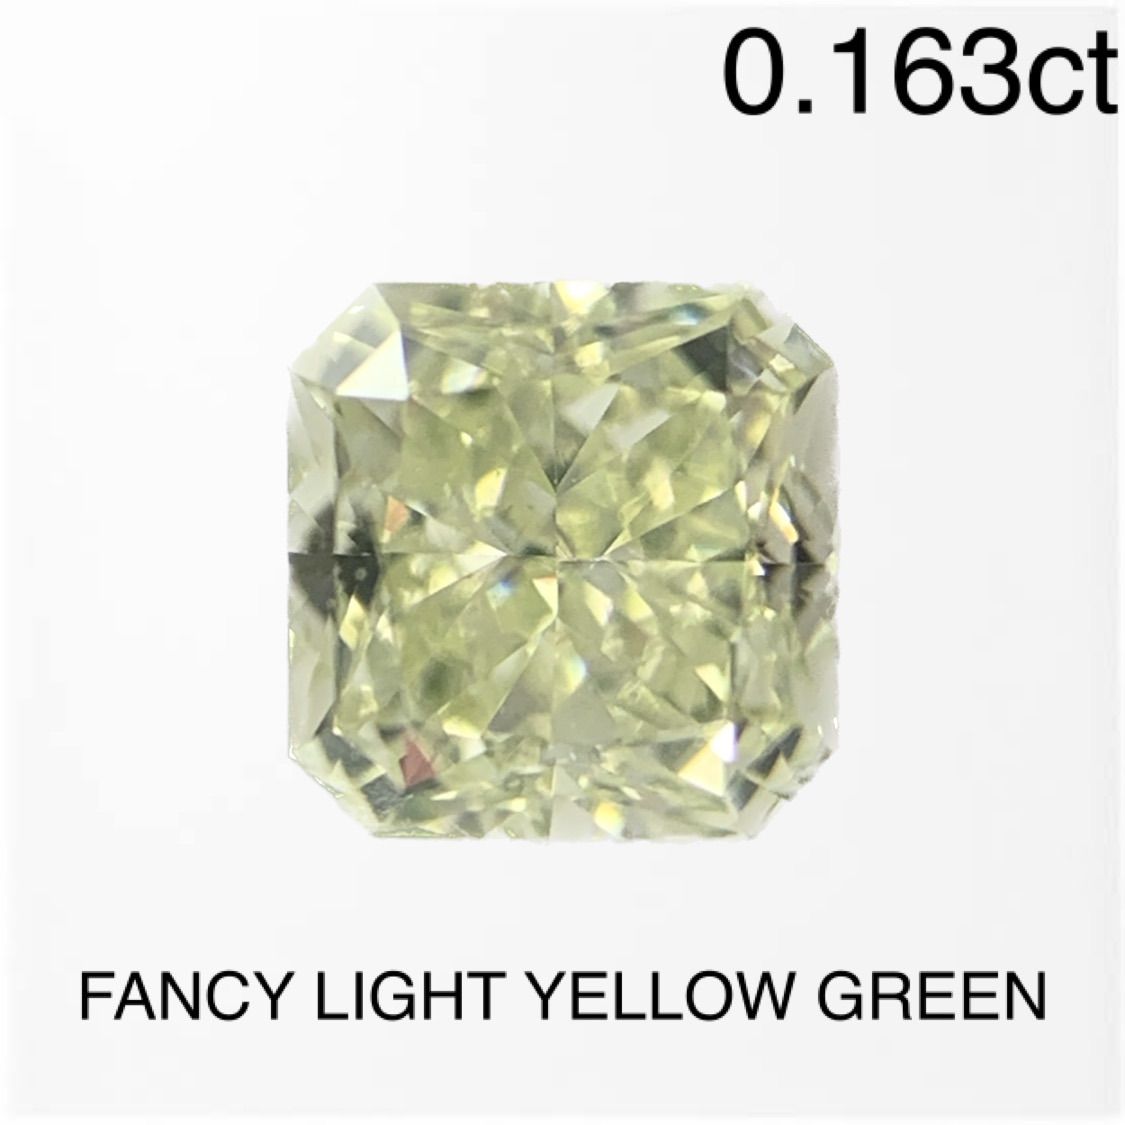 中央宝石研究所 FANCY LIGHT YELLOW GREEN ダイヤモンドルース - メルカリ